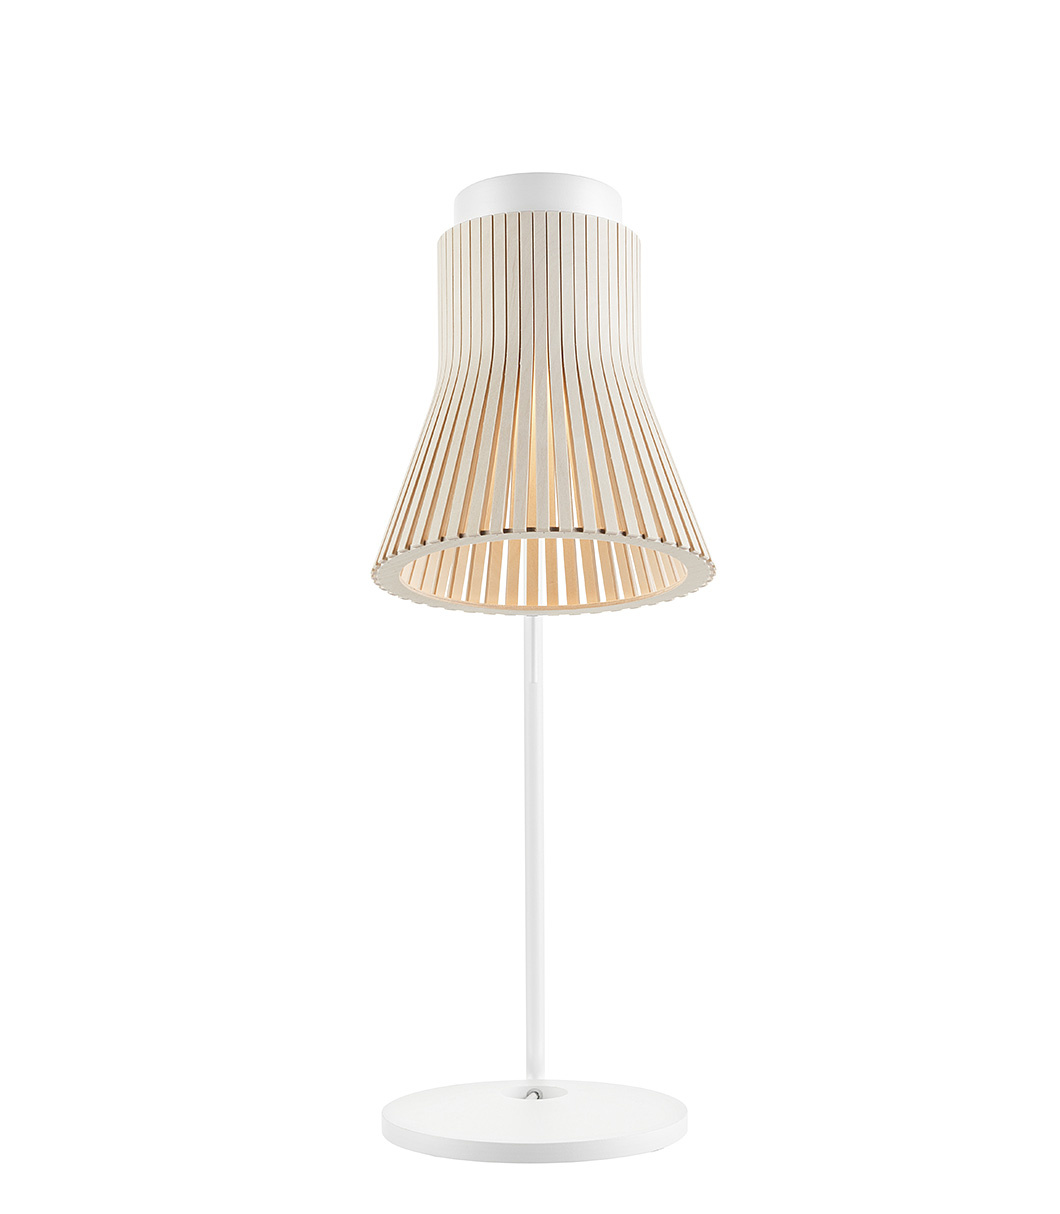 Lampe de table Petite 4620 est disponible en bouleau naturel